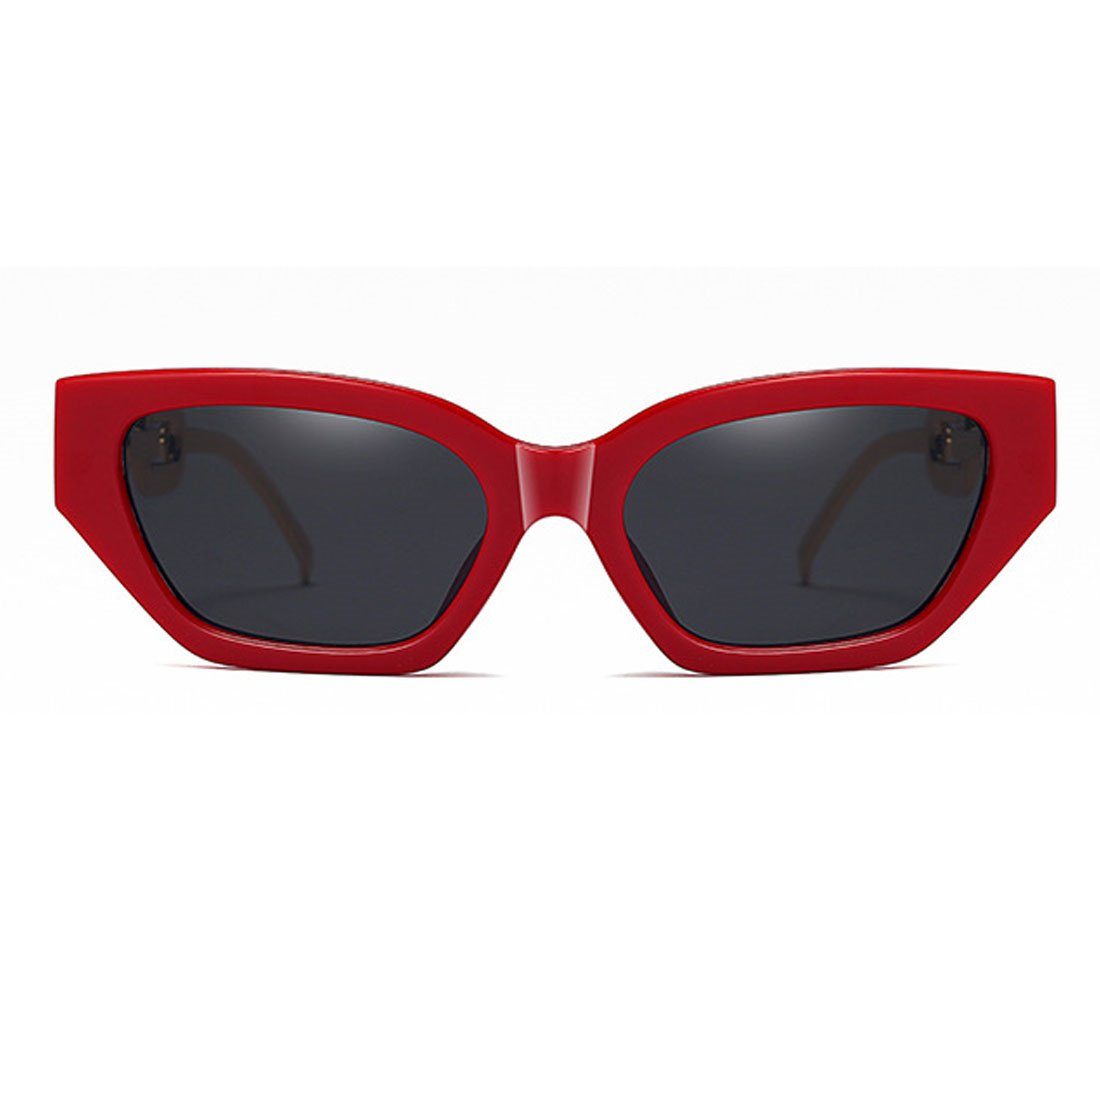 aus kleinem DÖRÖY Sonnenbrille Trendige mit Rahmen Metall,Sonnenbrille Damen-Sonnenbrille